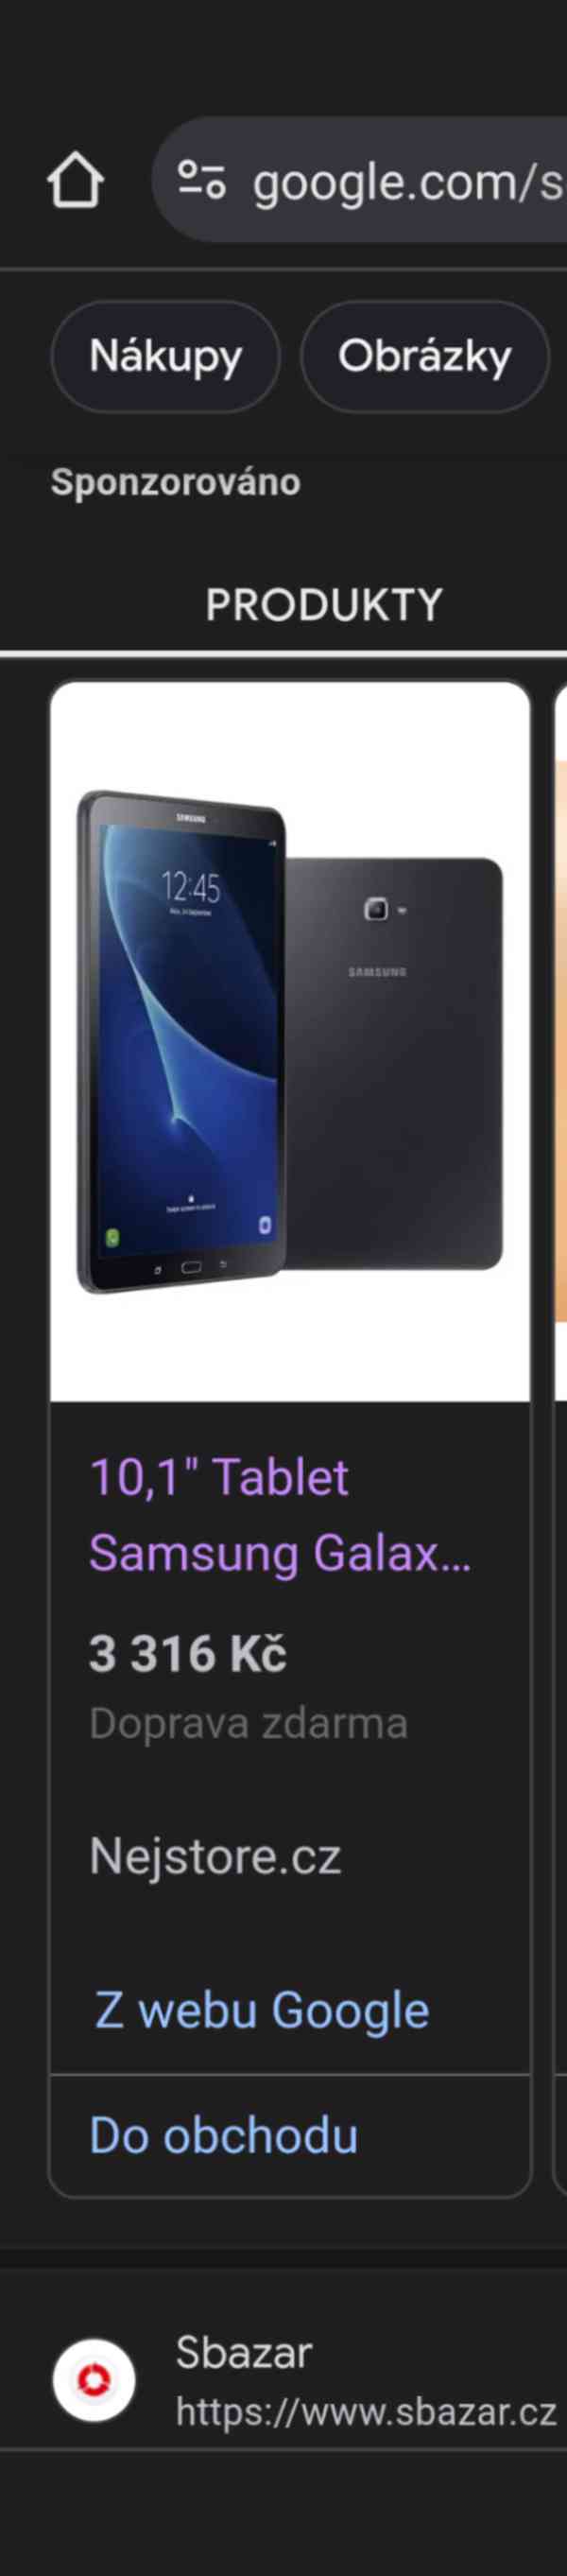 Samsung Galaxy Tab A SM-T585 16GB LTE Výměna ZA NEUROLY - foto 1